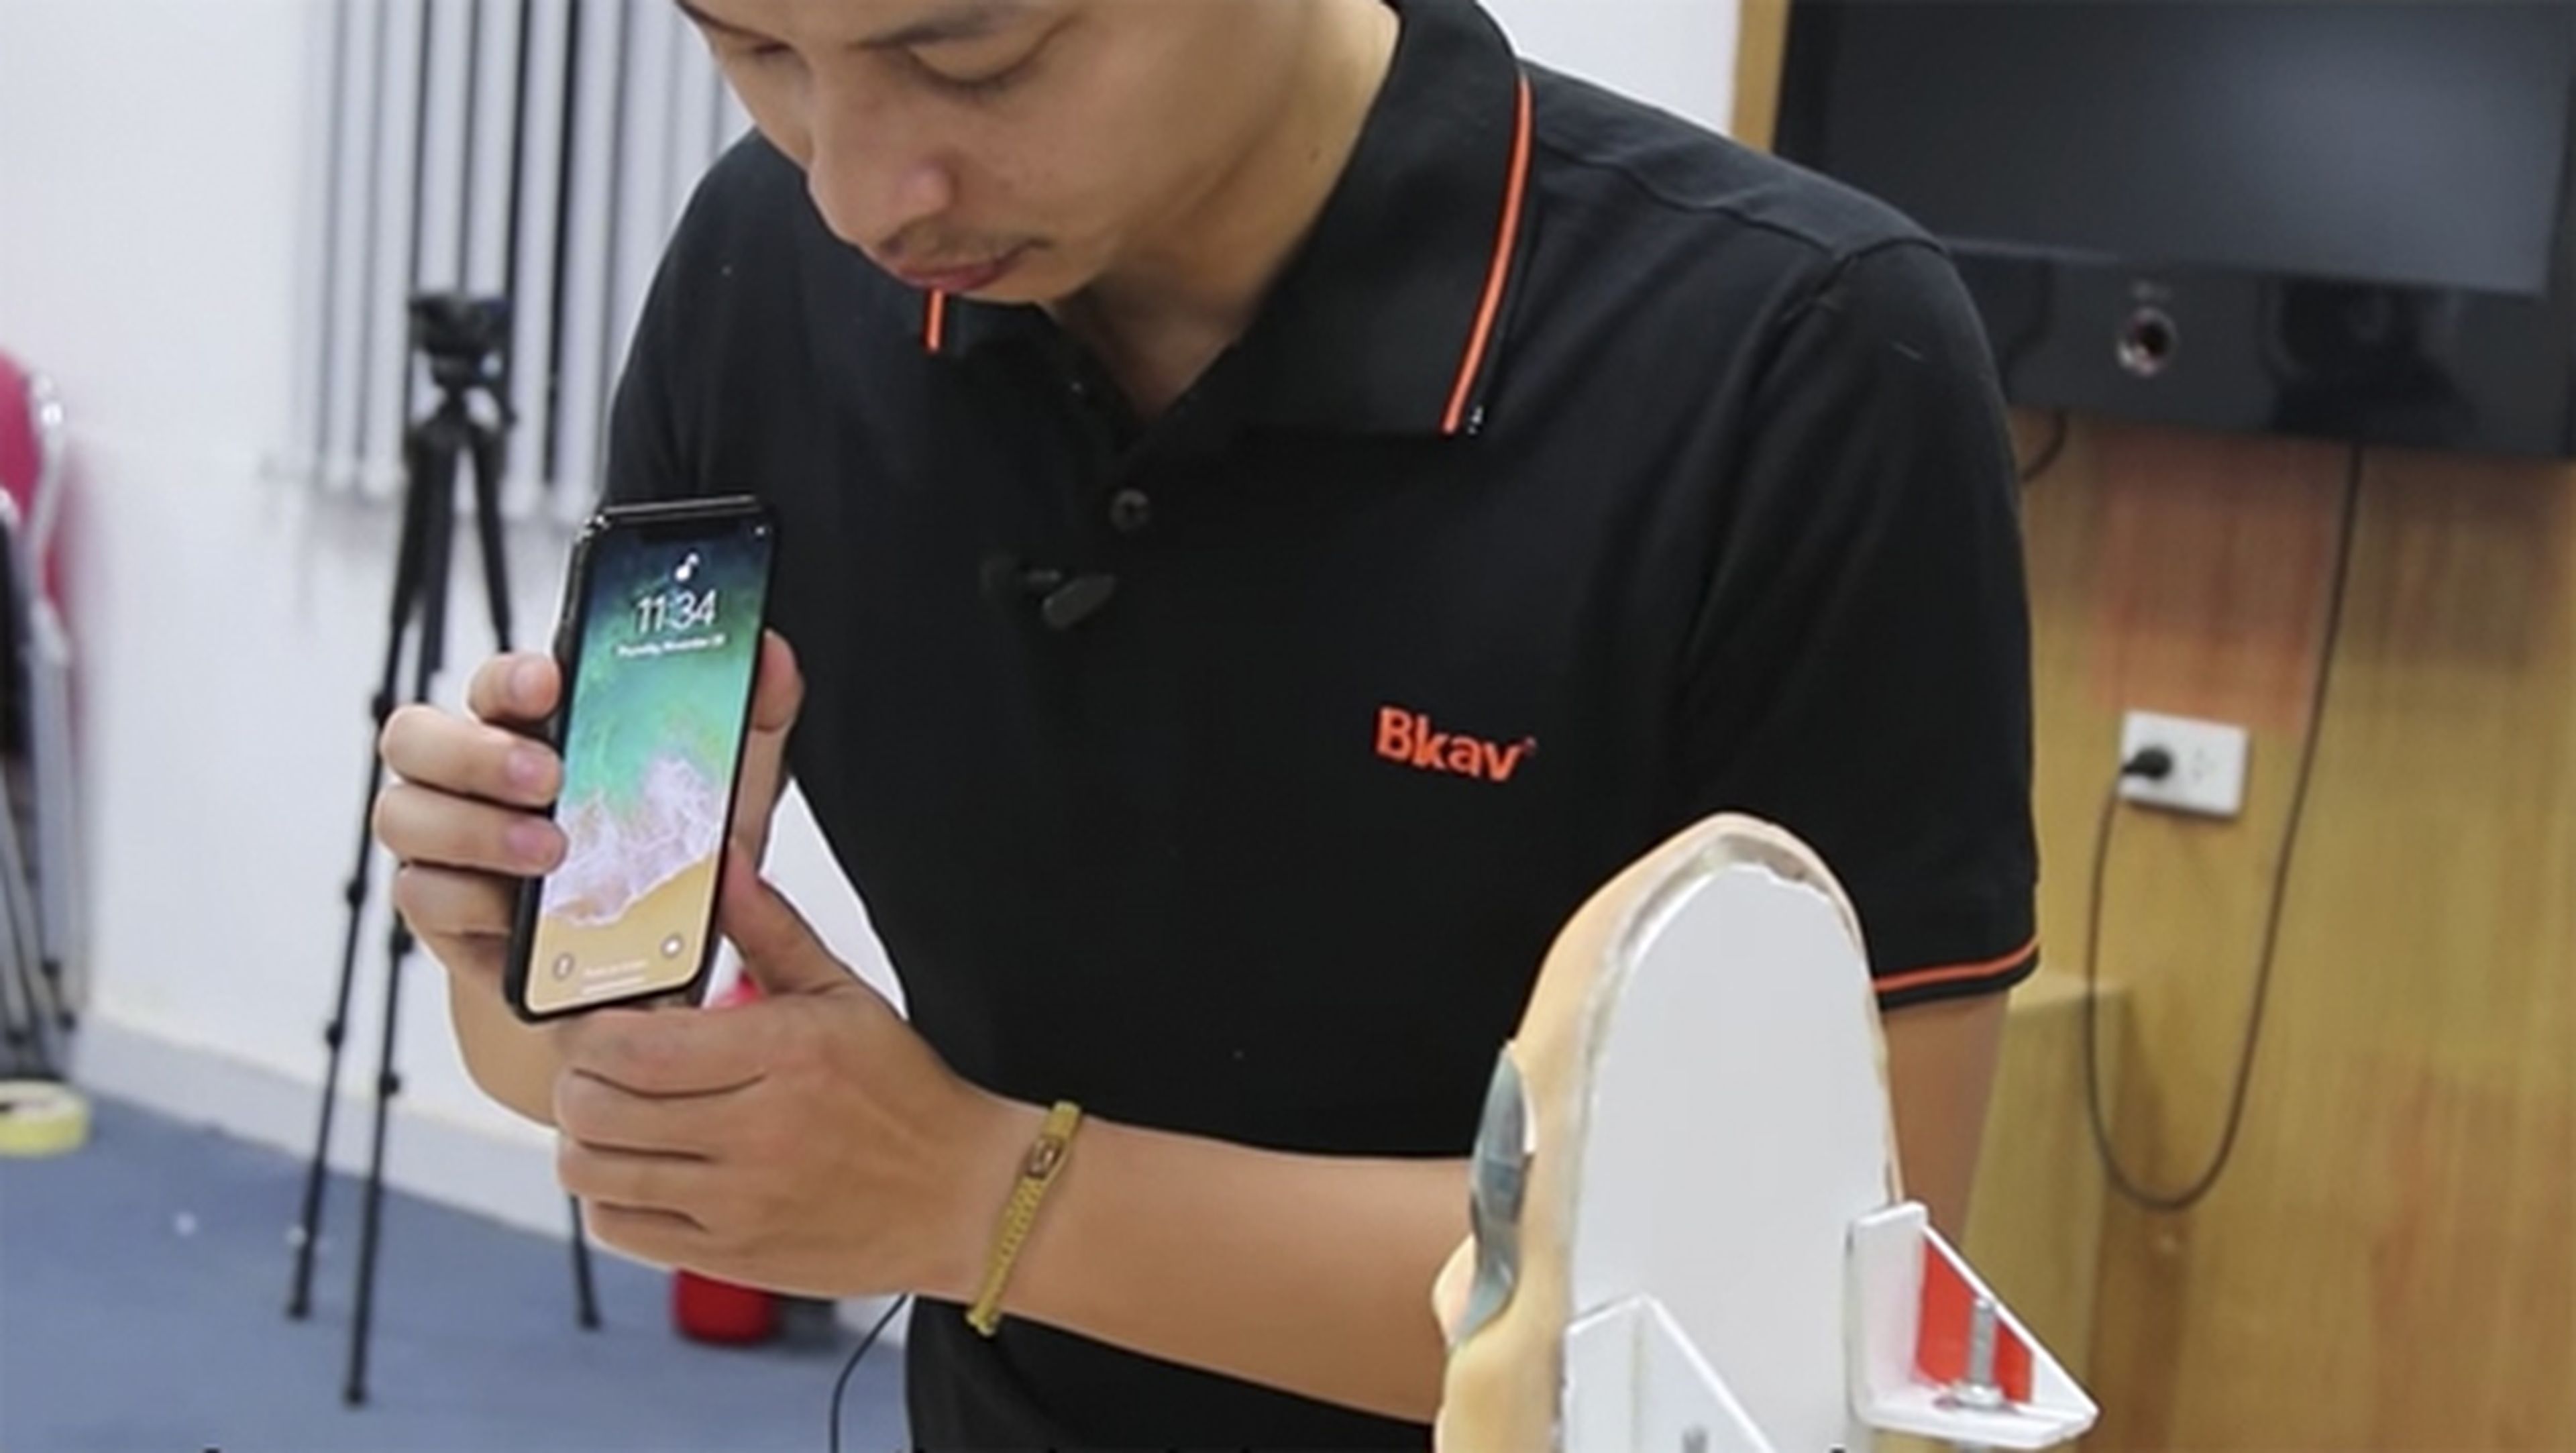 El equipo de Bkav engaña al Face ID del iPhone X